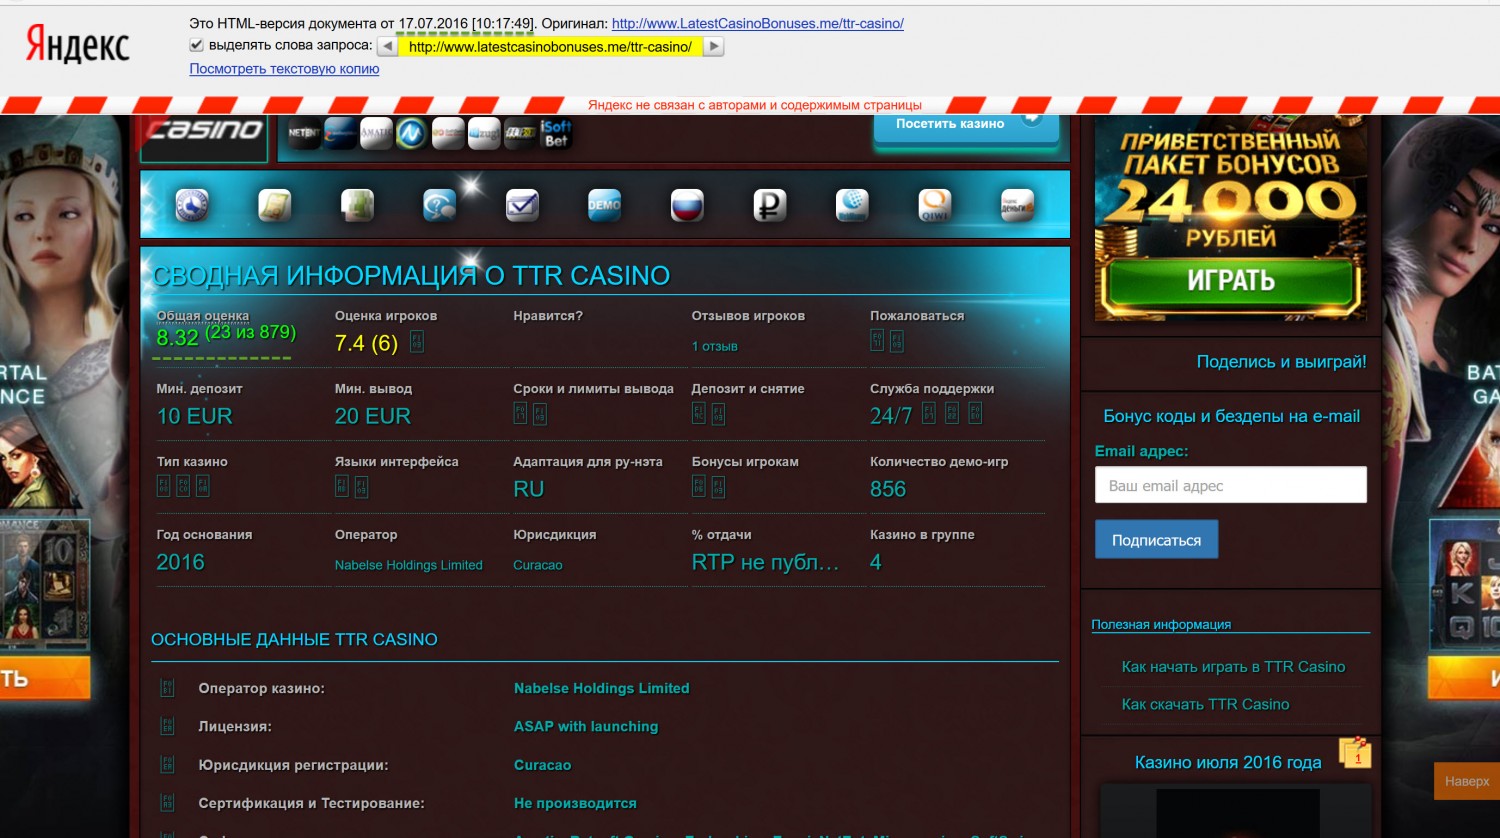 Список лицензированных казино в россии онлайн ставки на спорт 1 х бет текст